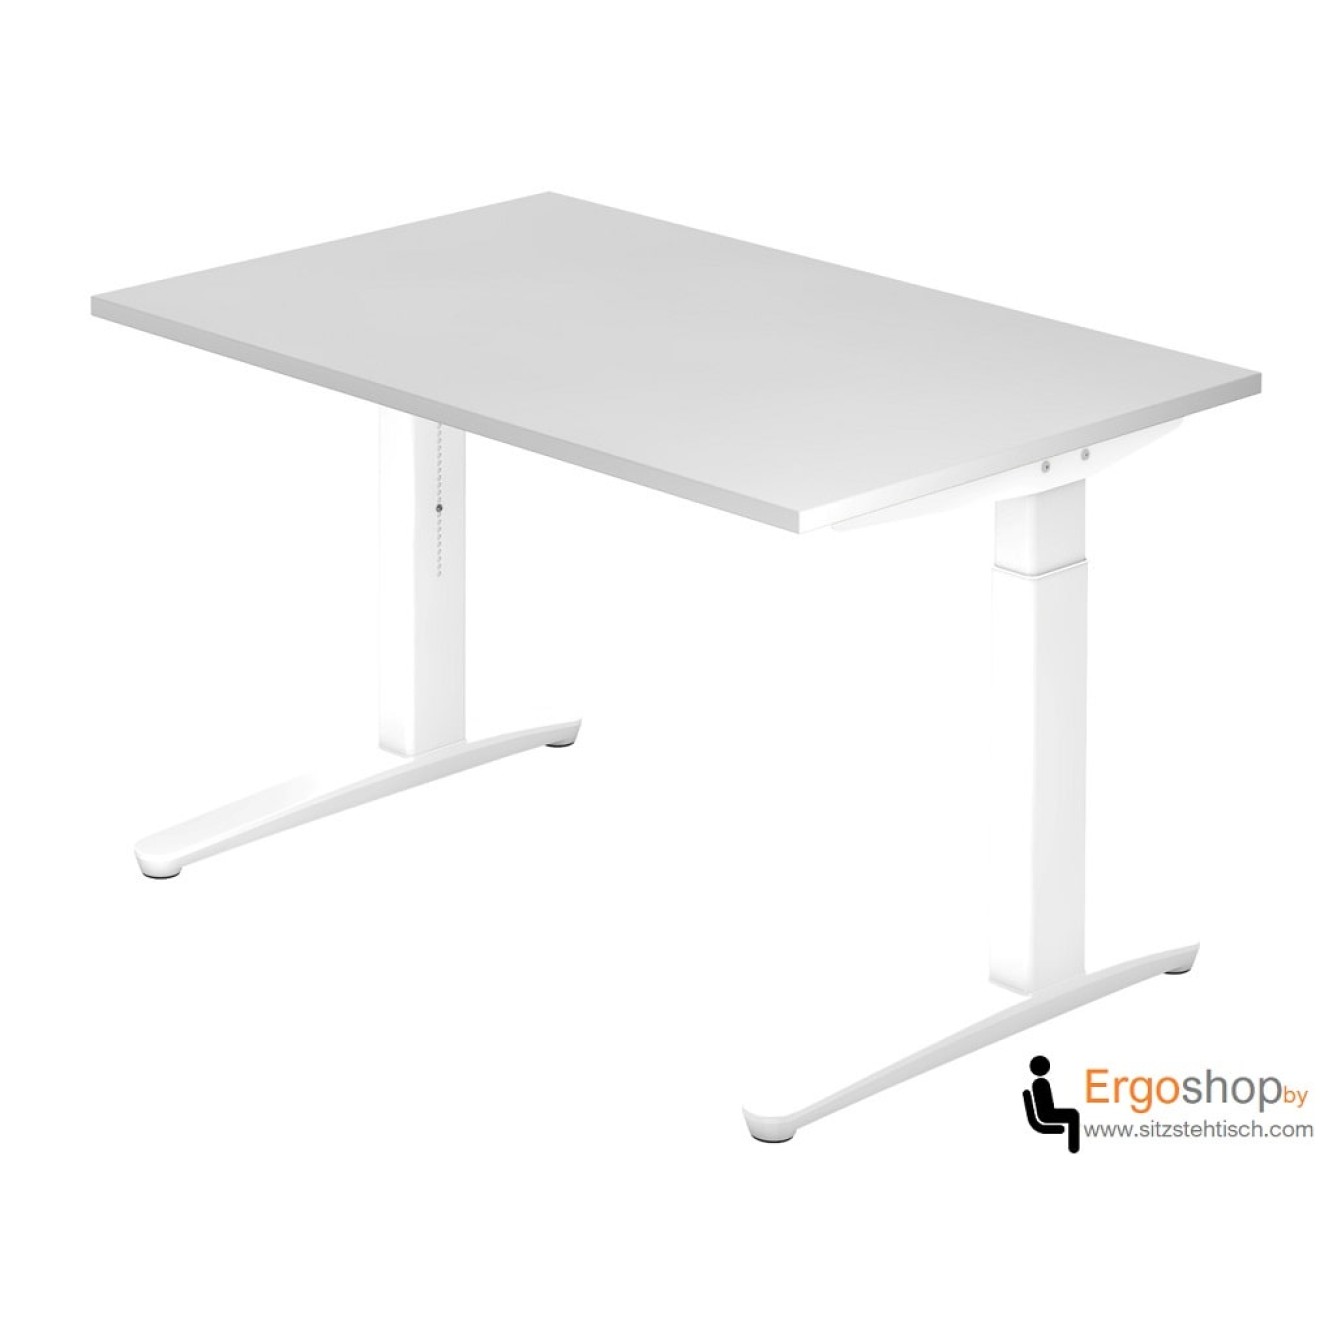 Schreibtisch manuell höheneinstellbar 65–85 cm mit Tischplatte 120 x 80 cm in Grau - Tischgestell in Weiß / Weiß - VXB12 - Hammerbacher